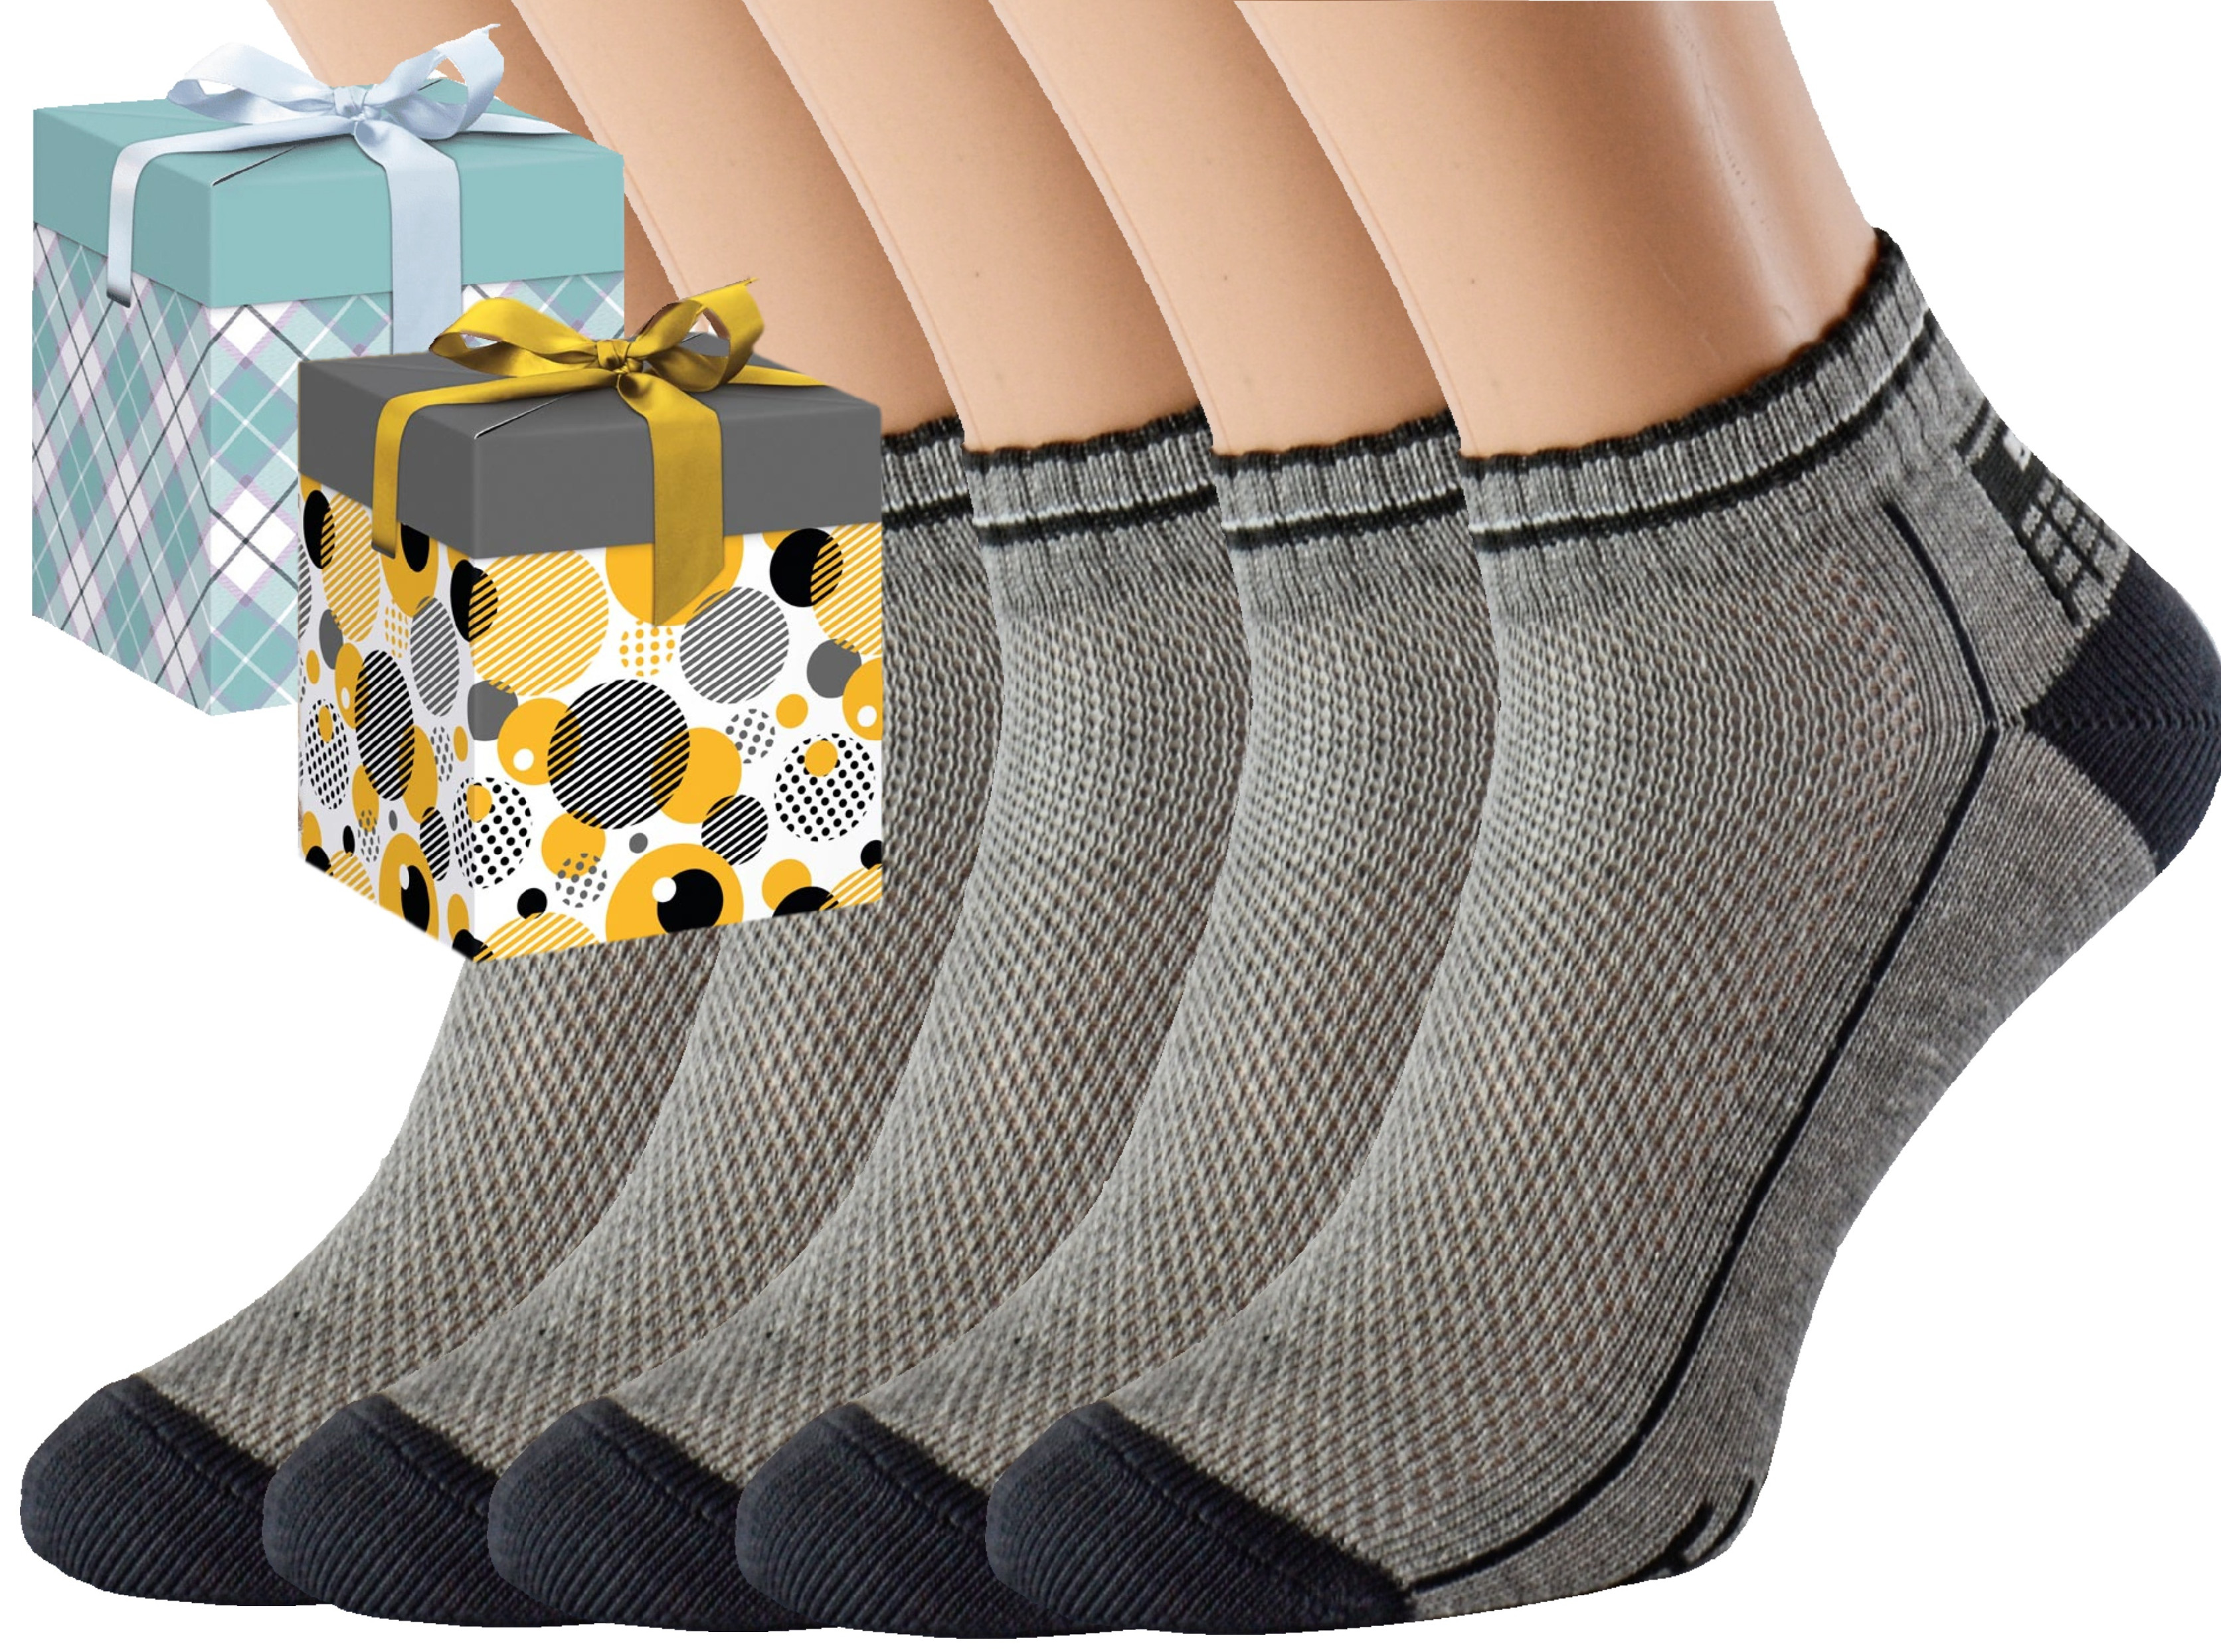 Dárkové balení 5 párů zdravotních ponožek EMIL Barva: Světle šedé, Velikost: EUR 46-48 (UK 11-12), Zvolte variantu dárkového balení: Mint kostkovaná